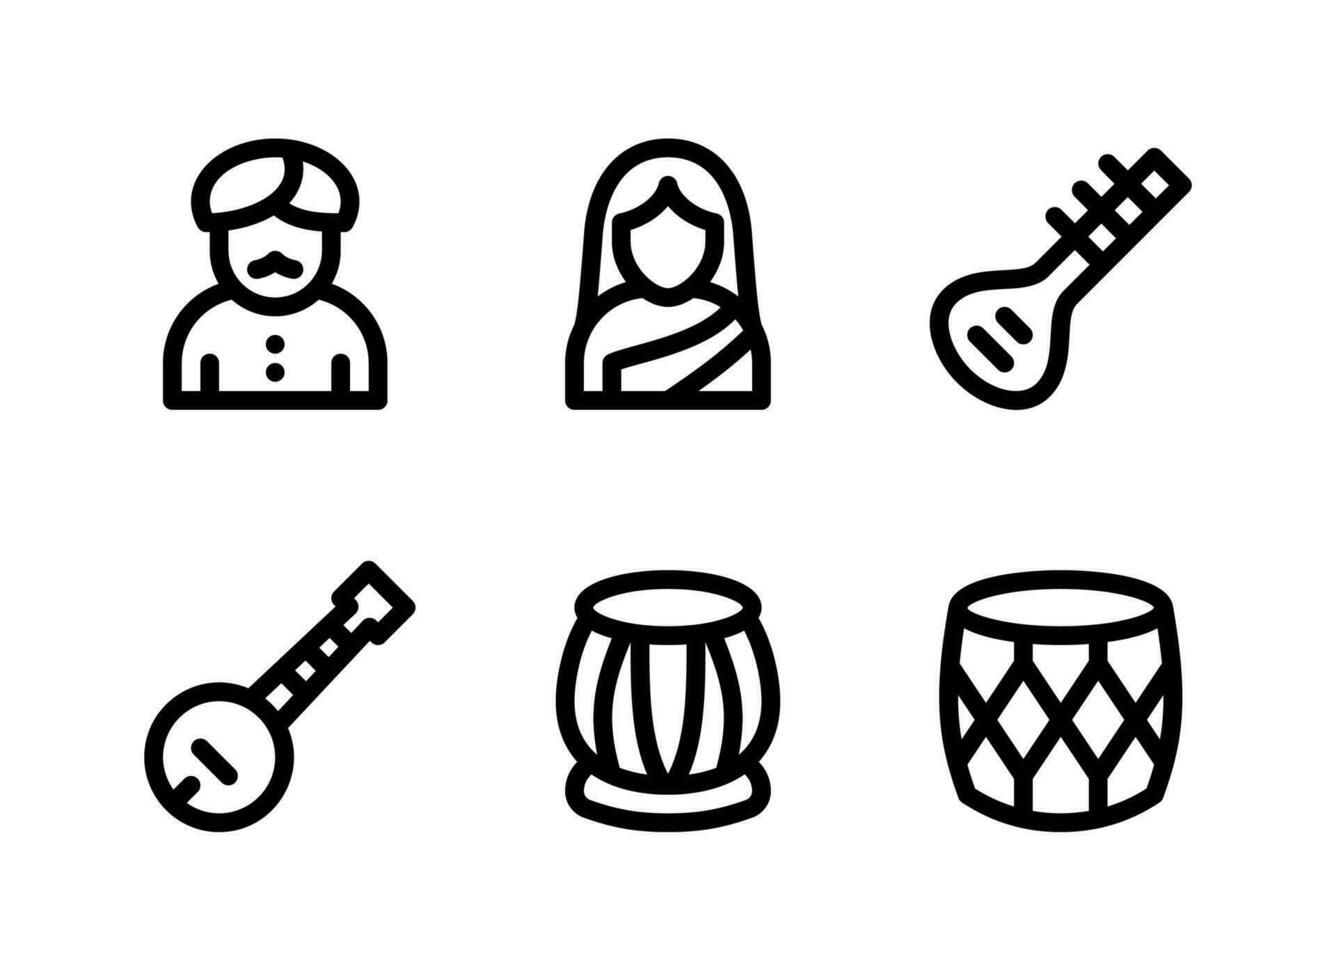 semplice set di icone di linee vettoriali relative al diwali